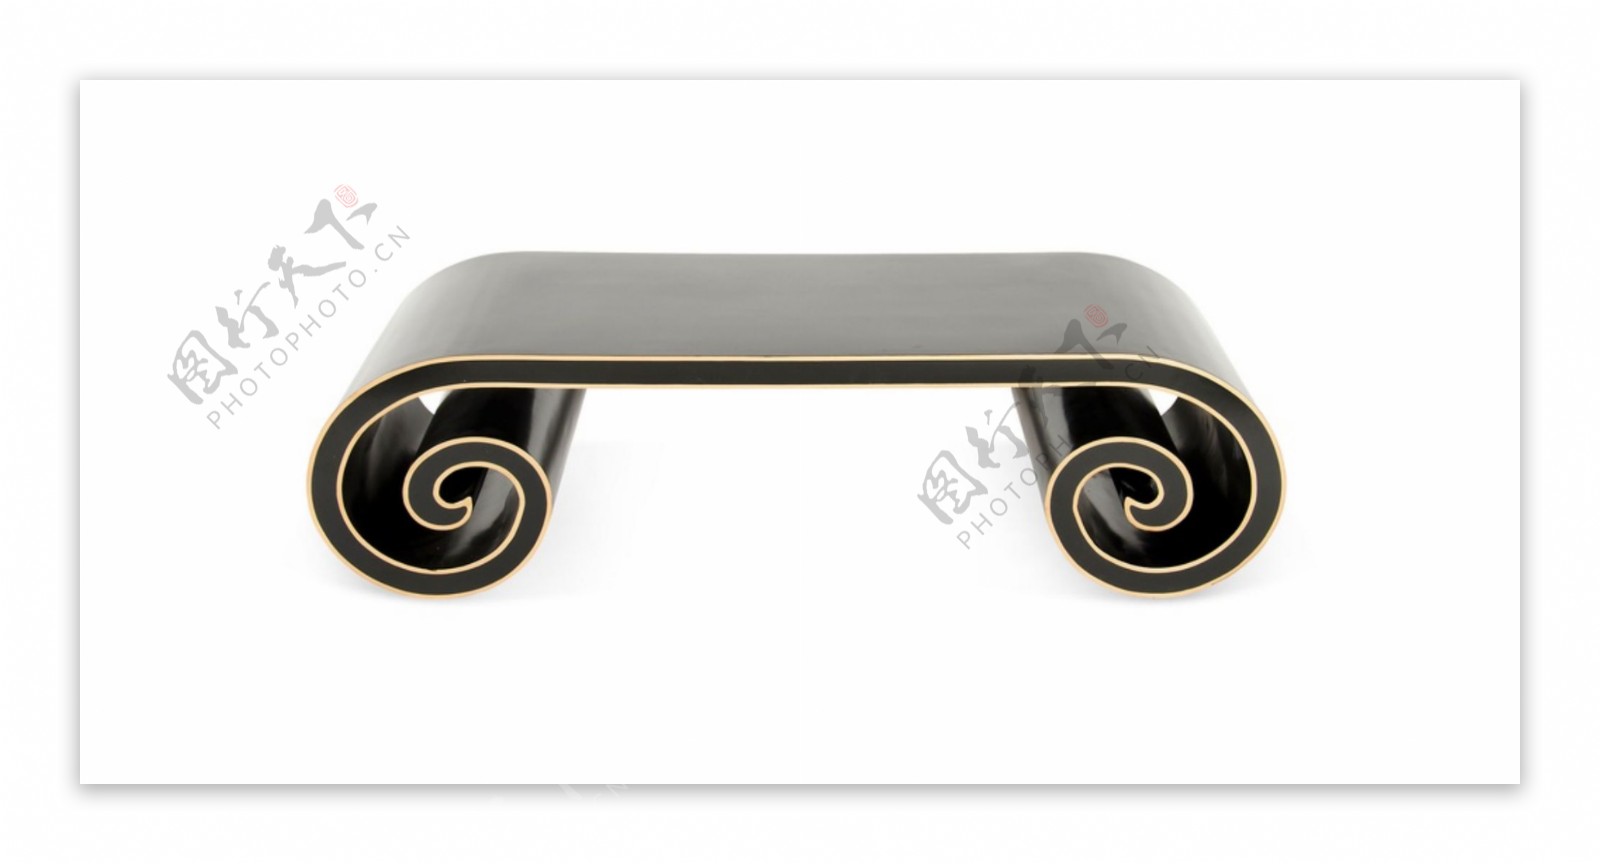 木墩桌子台基中国风座椅素材装饰家具